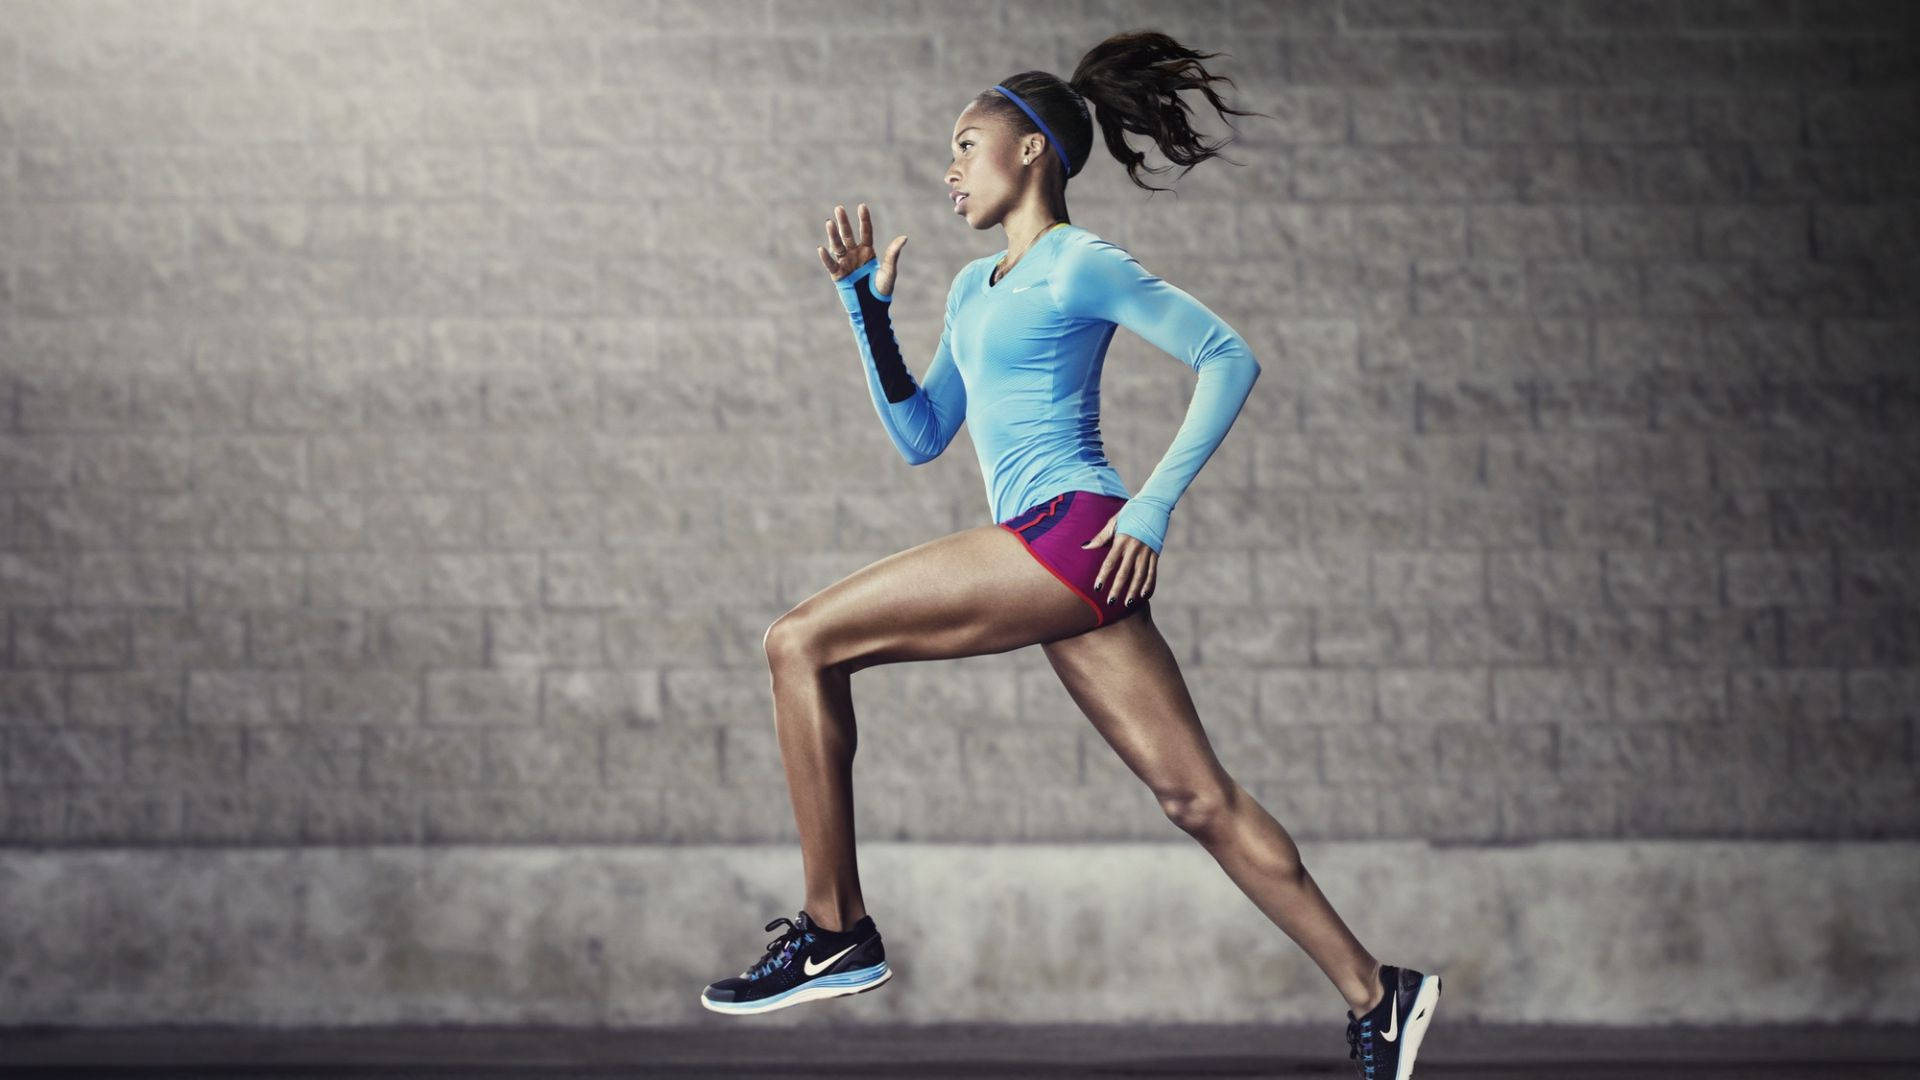 Nike Girl Athlete Running Wallpaper